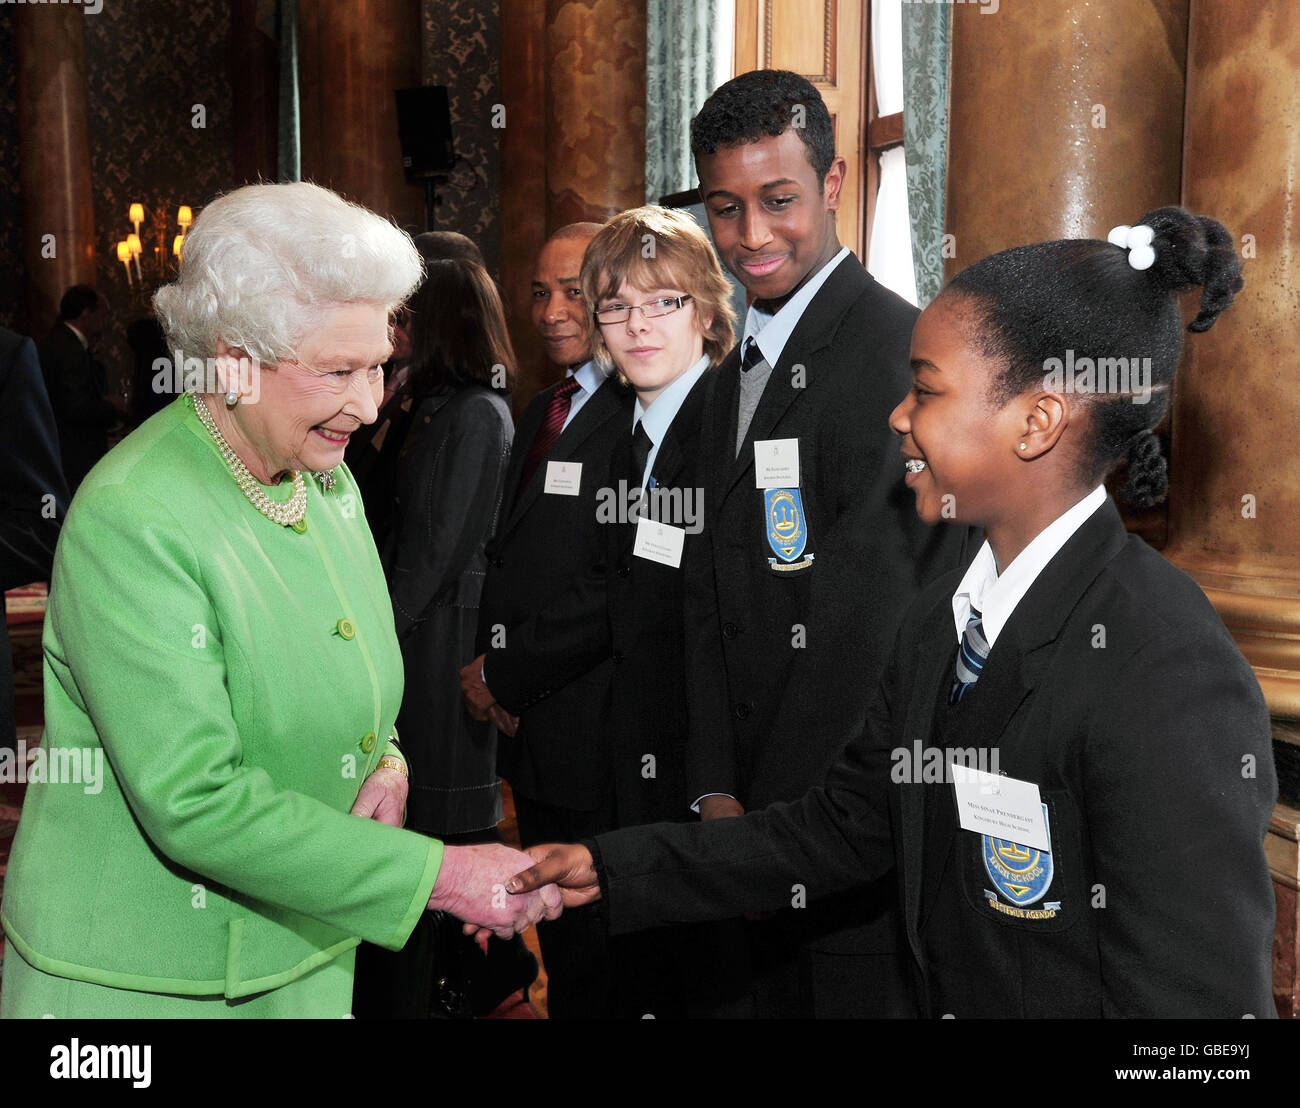 La Regina Elisabetta II della Gran Bretagna stringe le mani con Sinae Prendergast della Kingbury High School, guardata dagli amici della scuola Hashi Ahmed (seconda a destra), e Fergus Leahy (terza a destra) dopo aver rilanciato il sito di Monarchy a Buckingham Palace nel centro di Londra, questo pomeriggio. Foto Stock